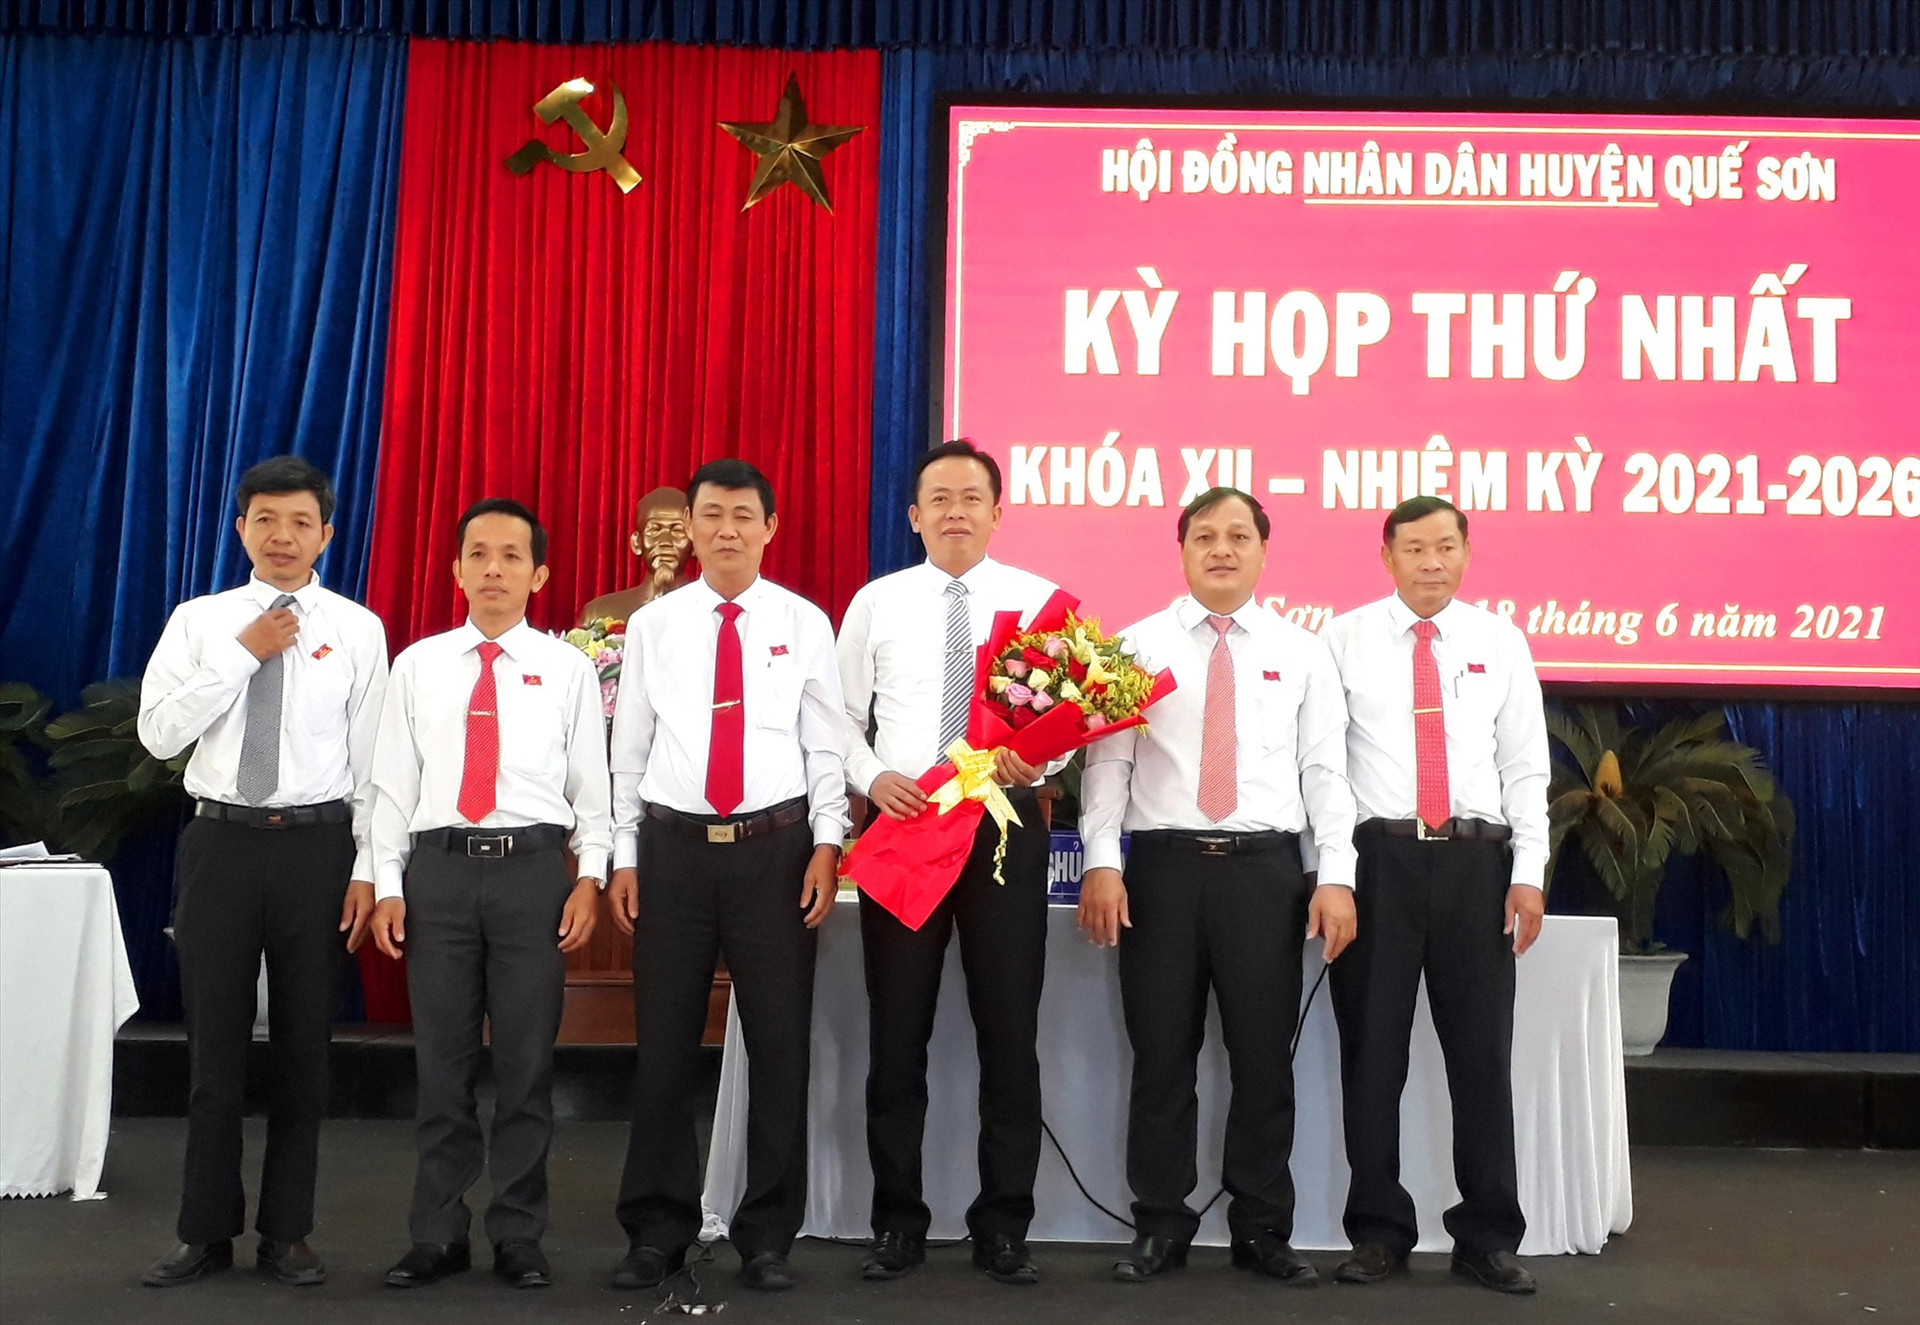 ông Đinh Nguyên Vũ được bầu giữ chức Chủ tịch HĐND huyện khóa XII, nhiệm kỳ 2021-2026. ảnh DT.